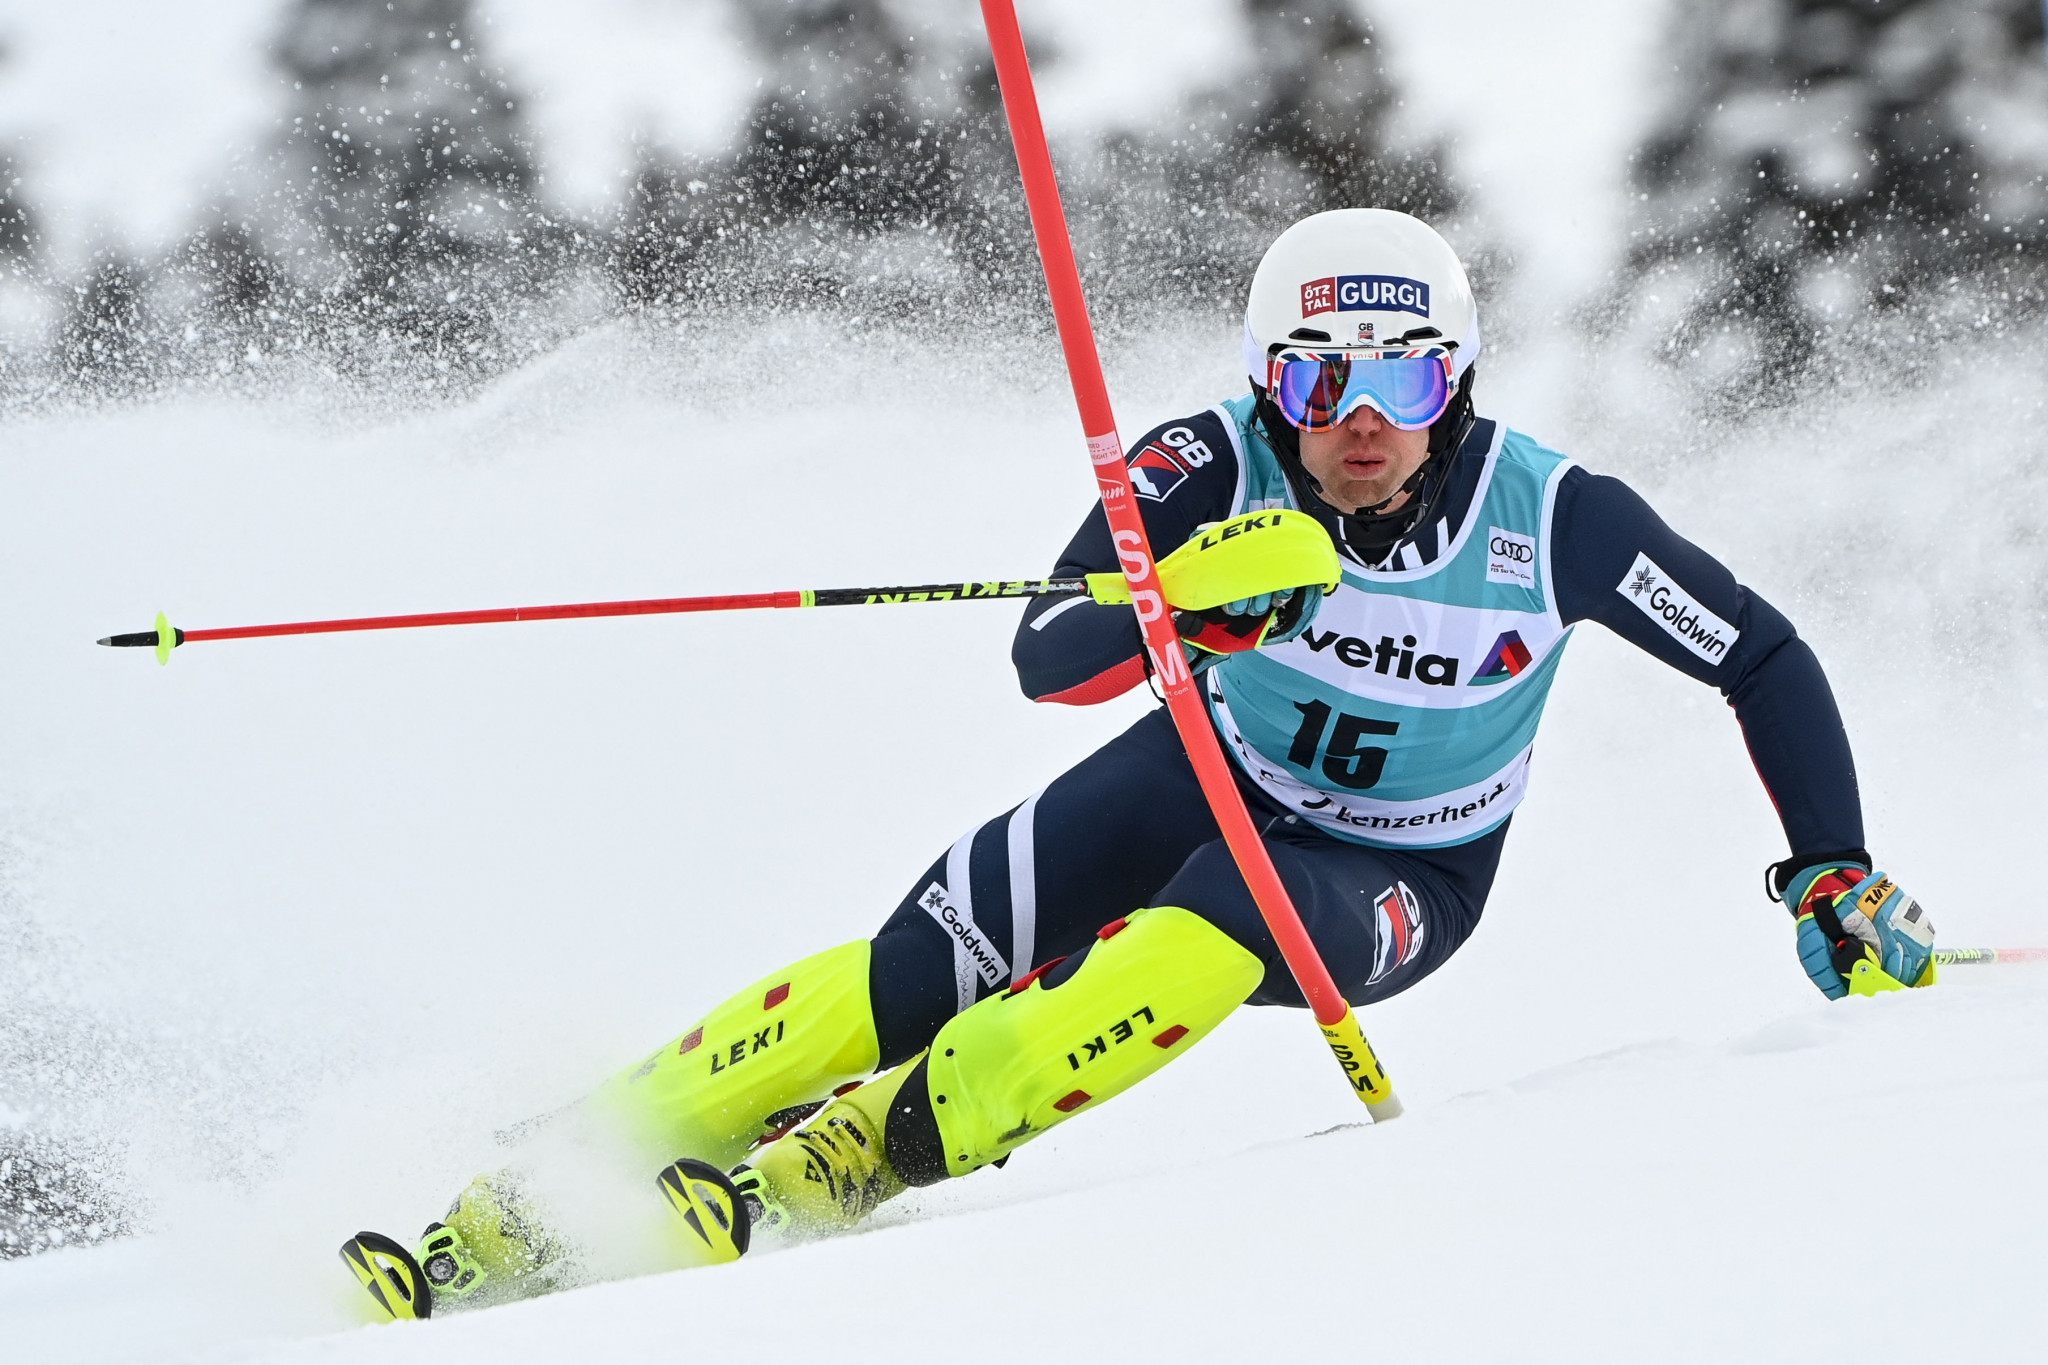 Ryding among six athletes named on British Alpine squad for new season